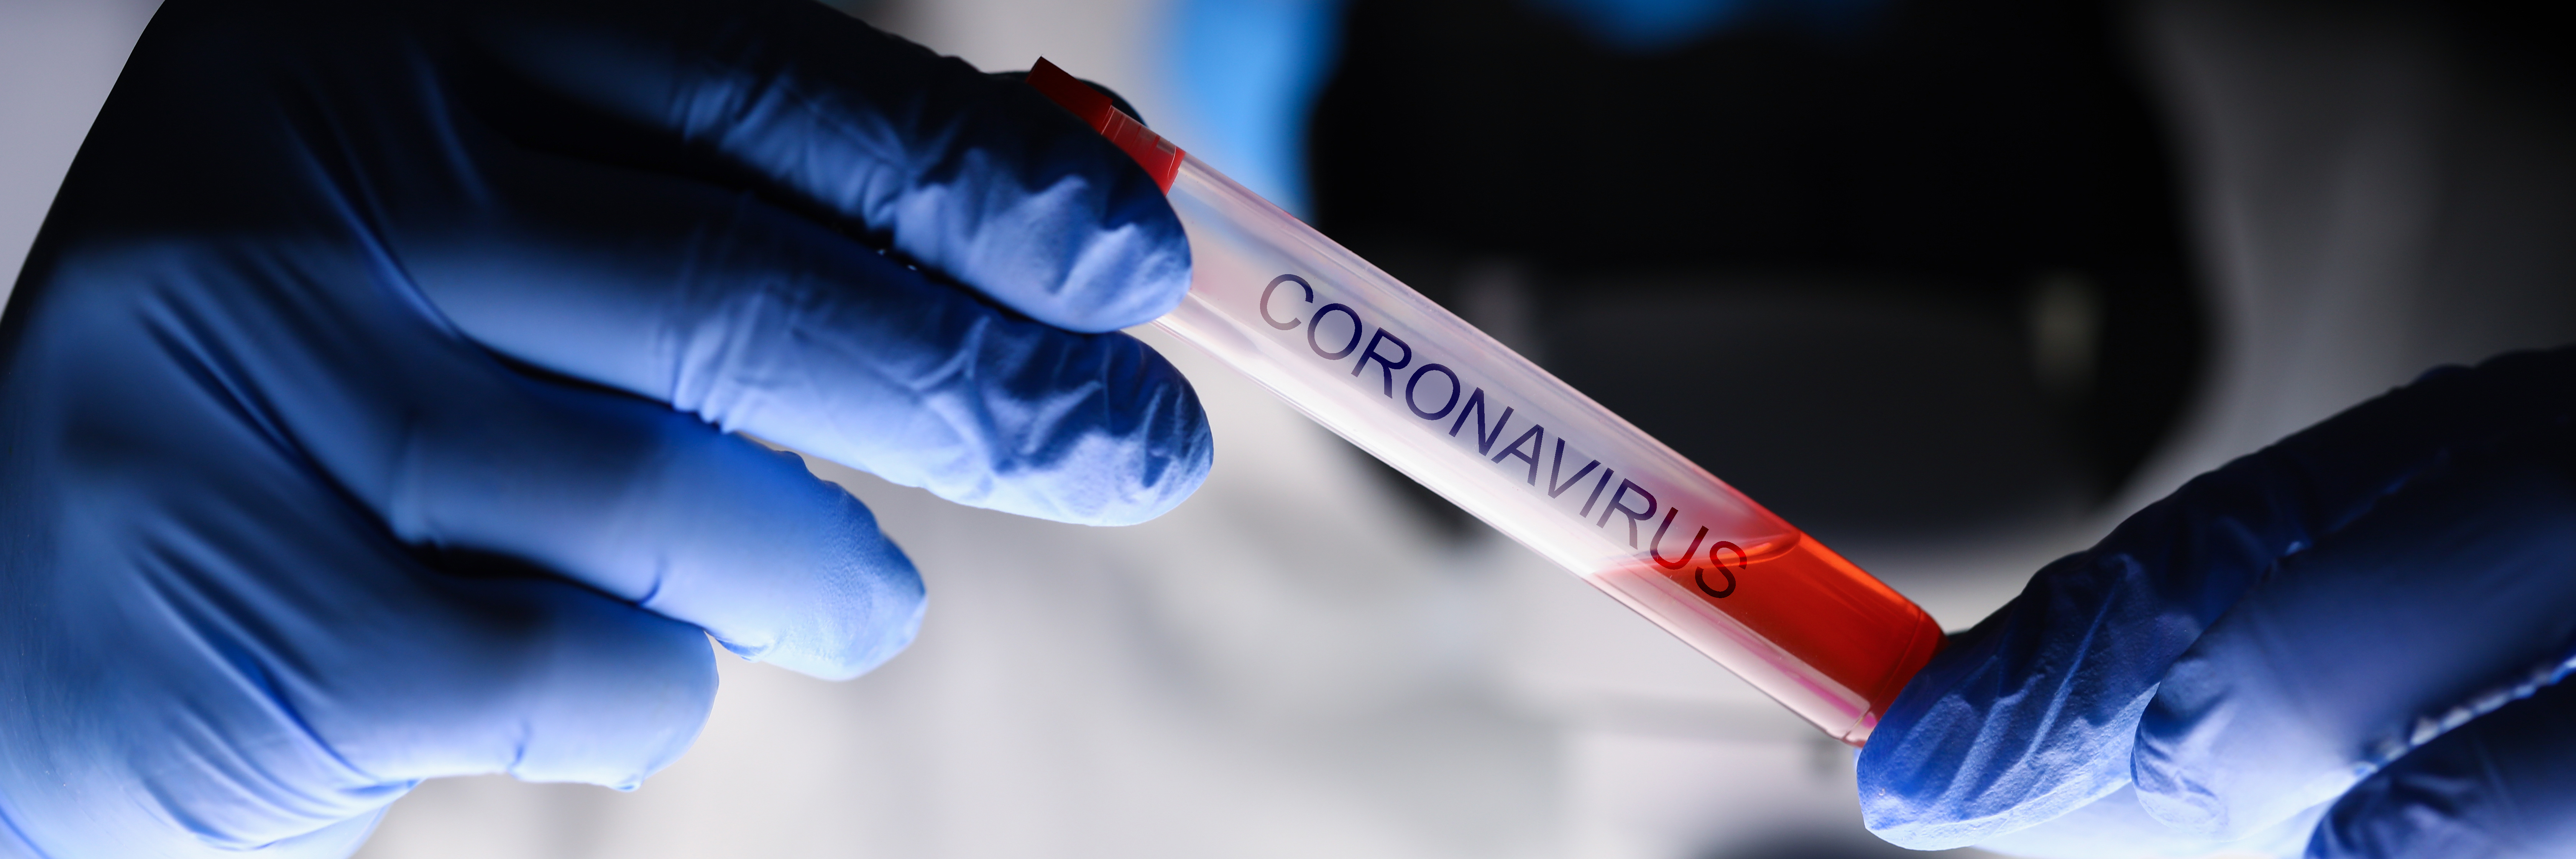 Tubo de ensayo Coronavirus